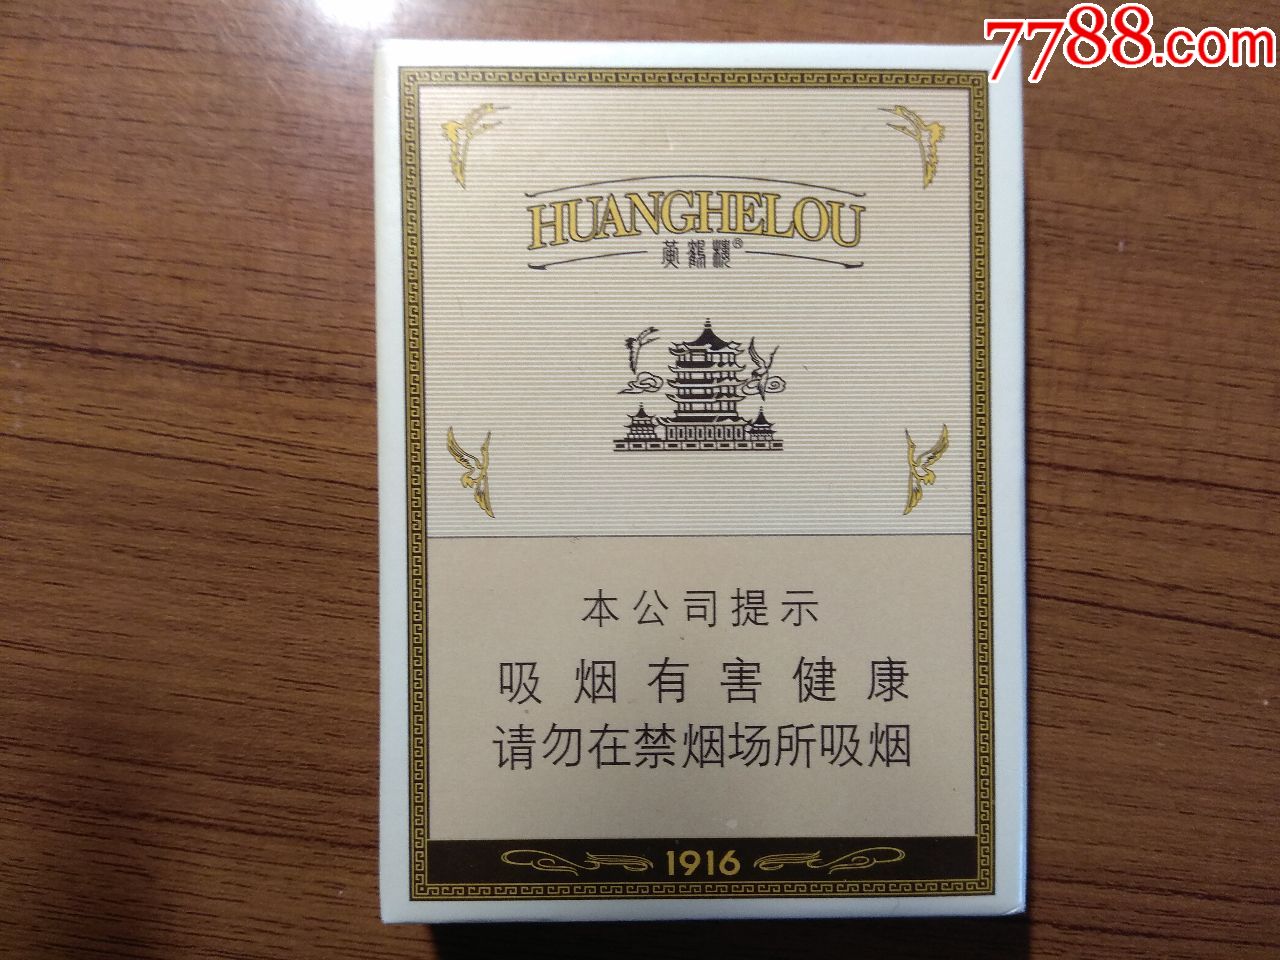 黄鹤楼1916中支-价格:5.0000元-au21556135-烟标/烟盒